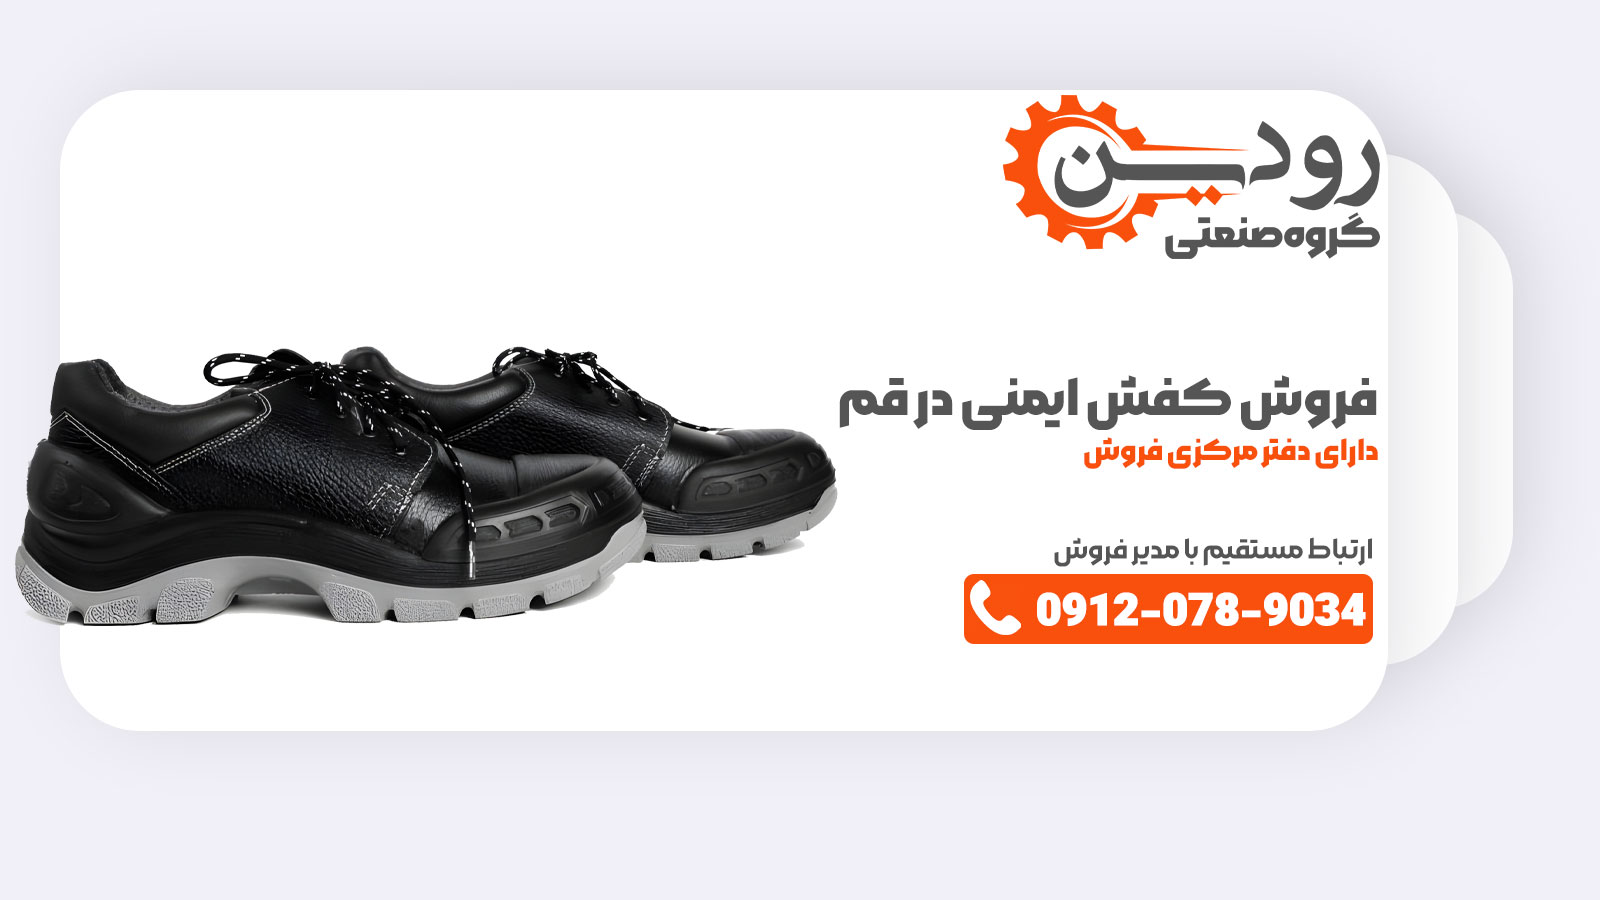 بزرگترین کارخانه تولید کفش ایمنی در قم راه اندازی شده و می‌تواند انواع کفش ایمنی را به شما مشتریان ارائه دهد.